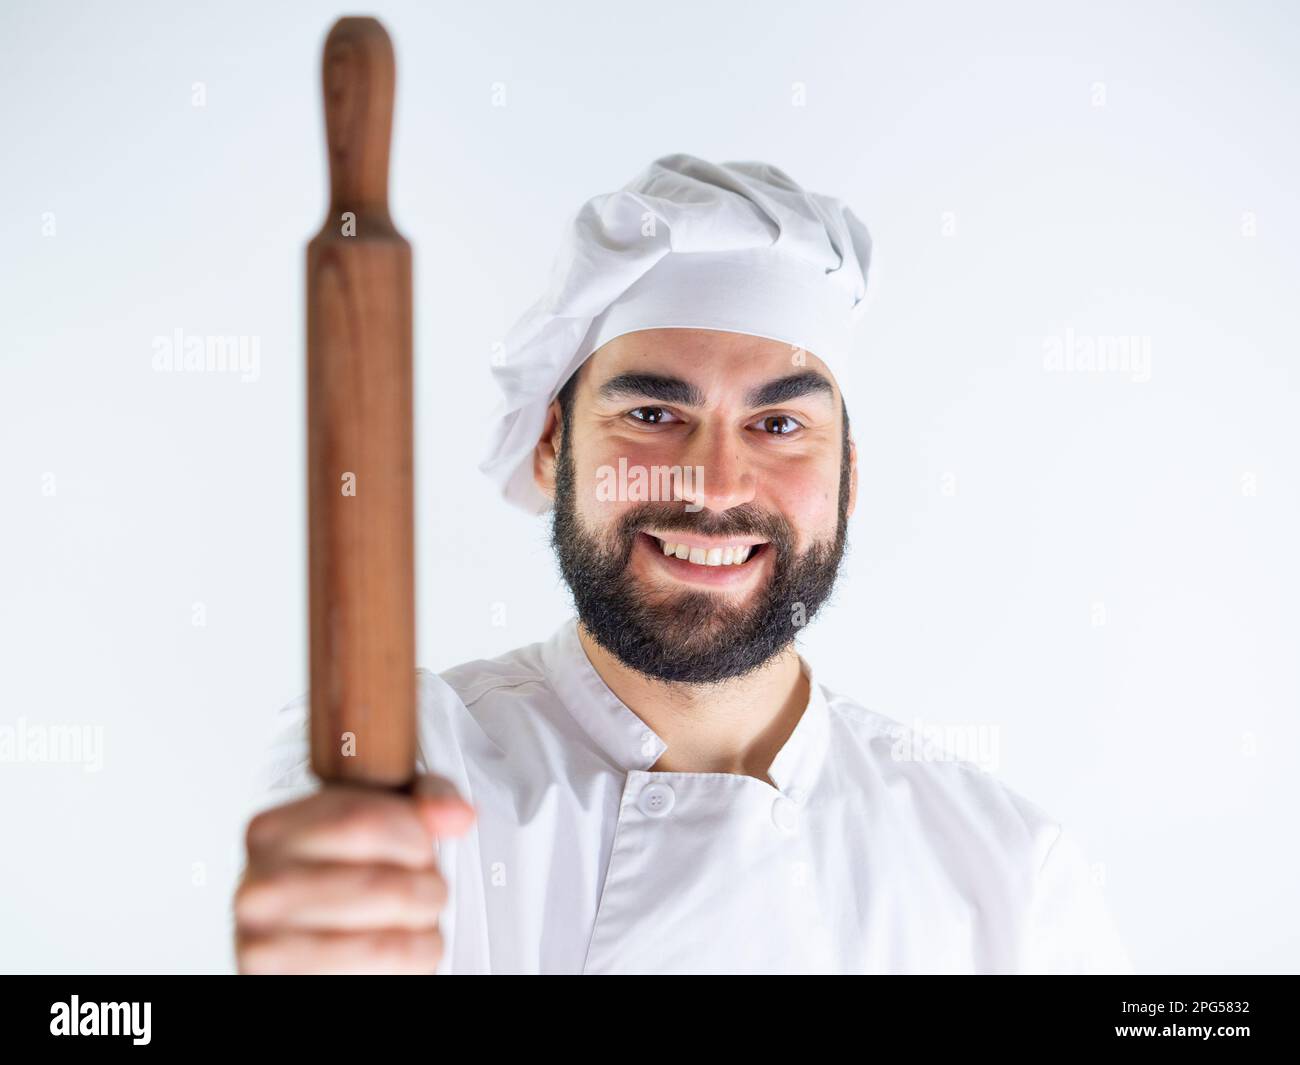 Giovane cuoco maschio che mostra un perno di legno mentre sorride e guarda la macchina fotografica. Isolato su sfondo bianco Foto Stock